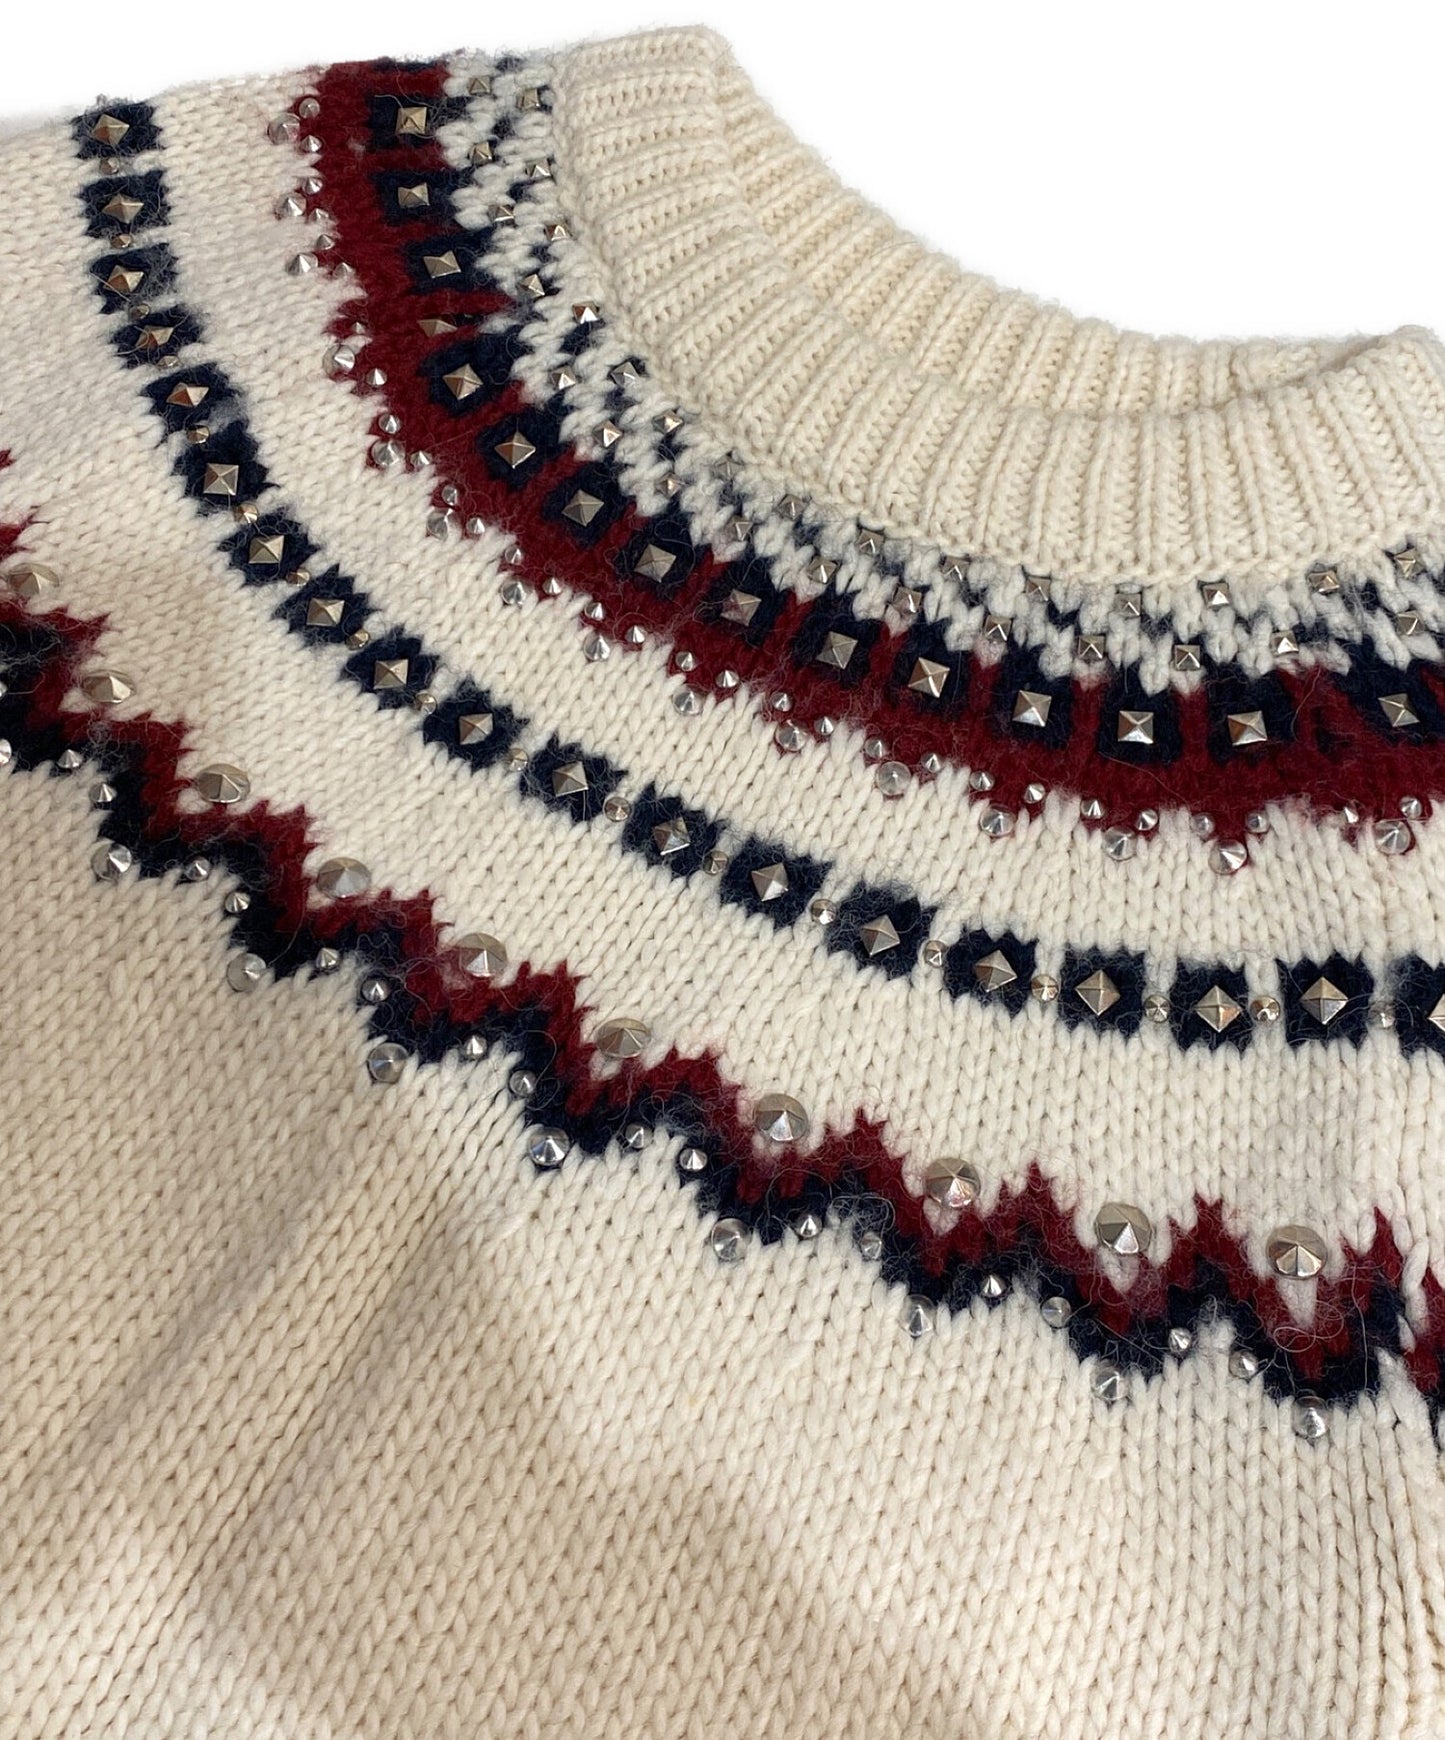 [Pre-owned] Saint Laurent Paris 13AW Studded elbow patch knit 331127 Y1CC1